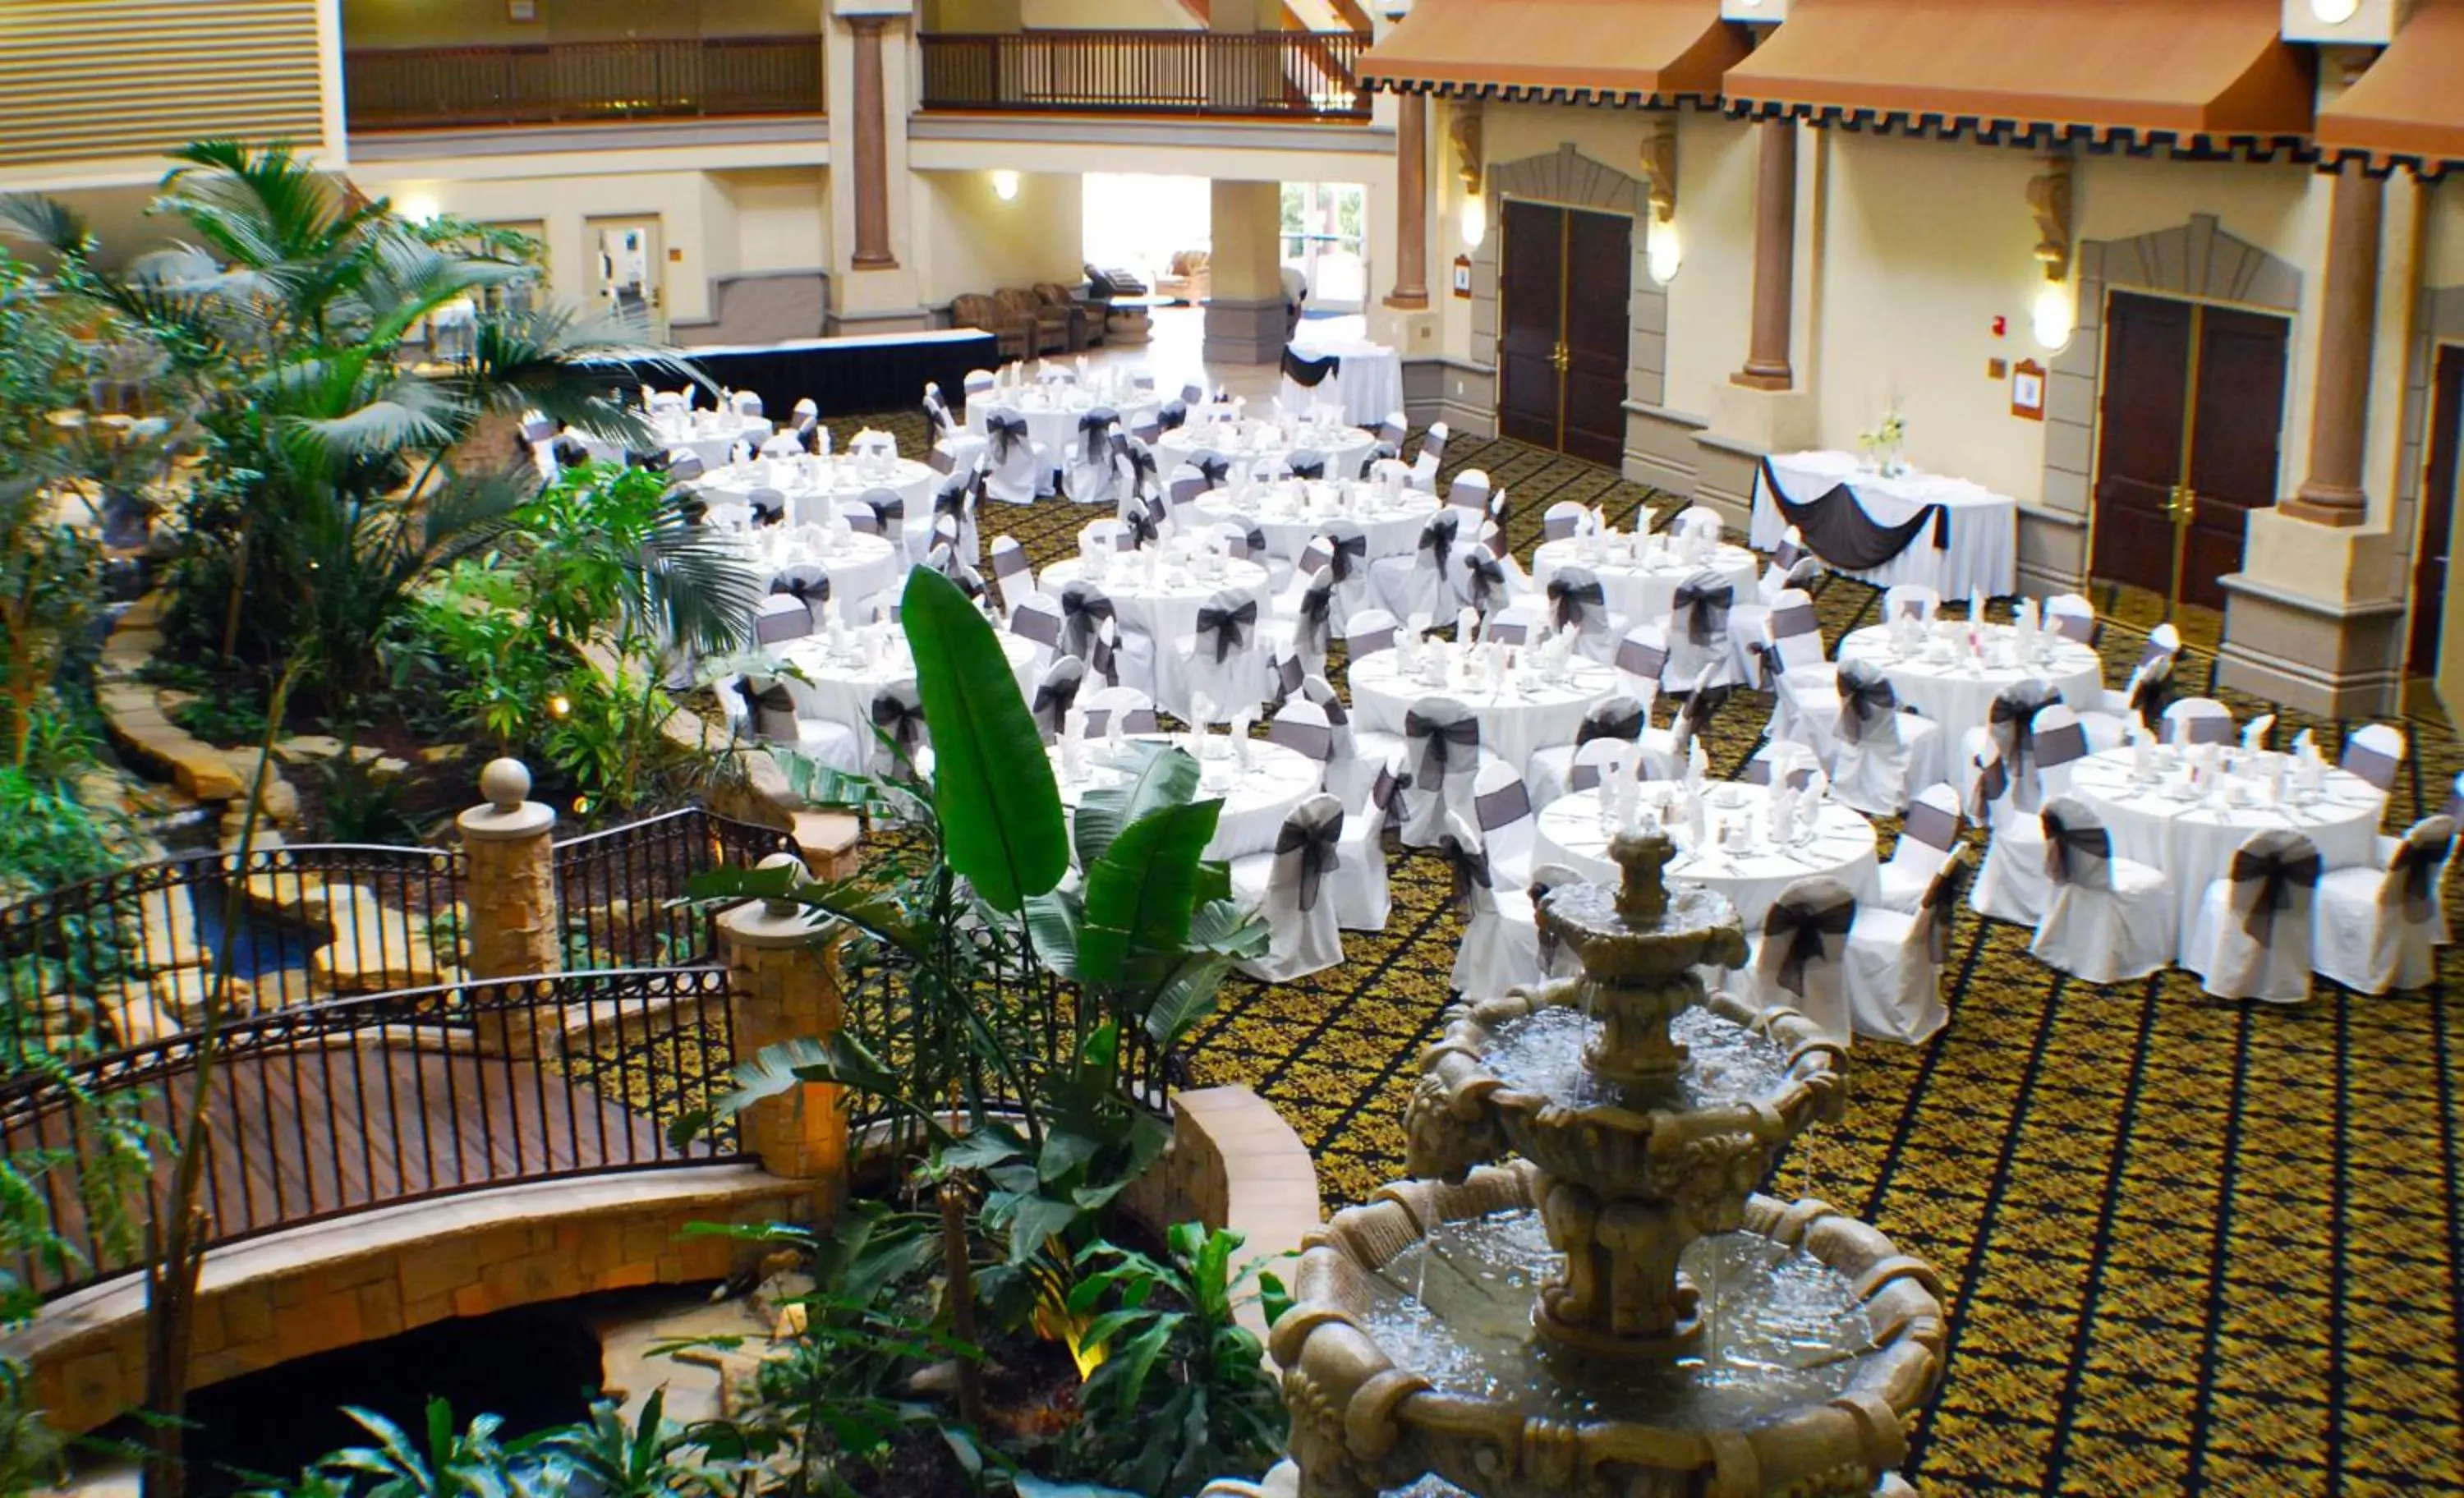 Banquet/Function facilities, Banquet Facilities in Radisson Hotel El Paso Airport